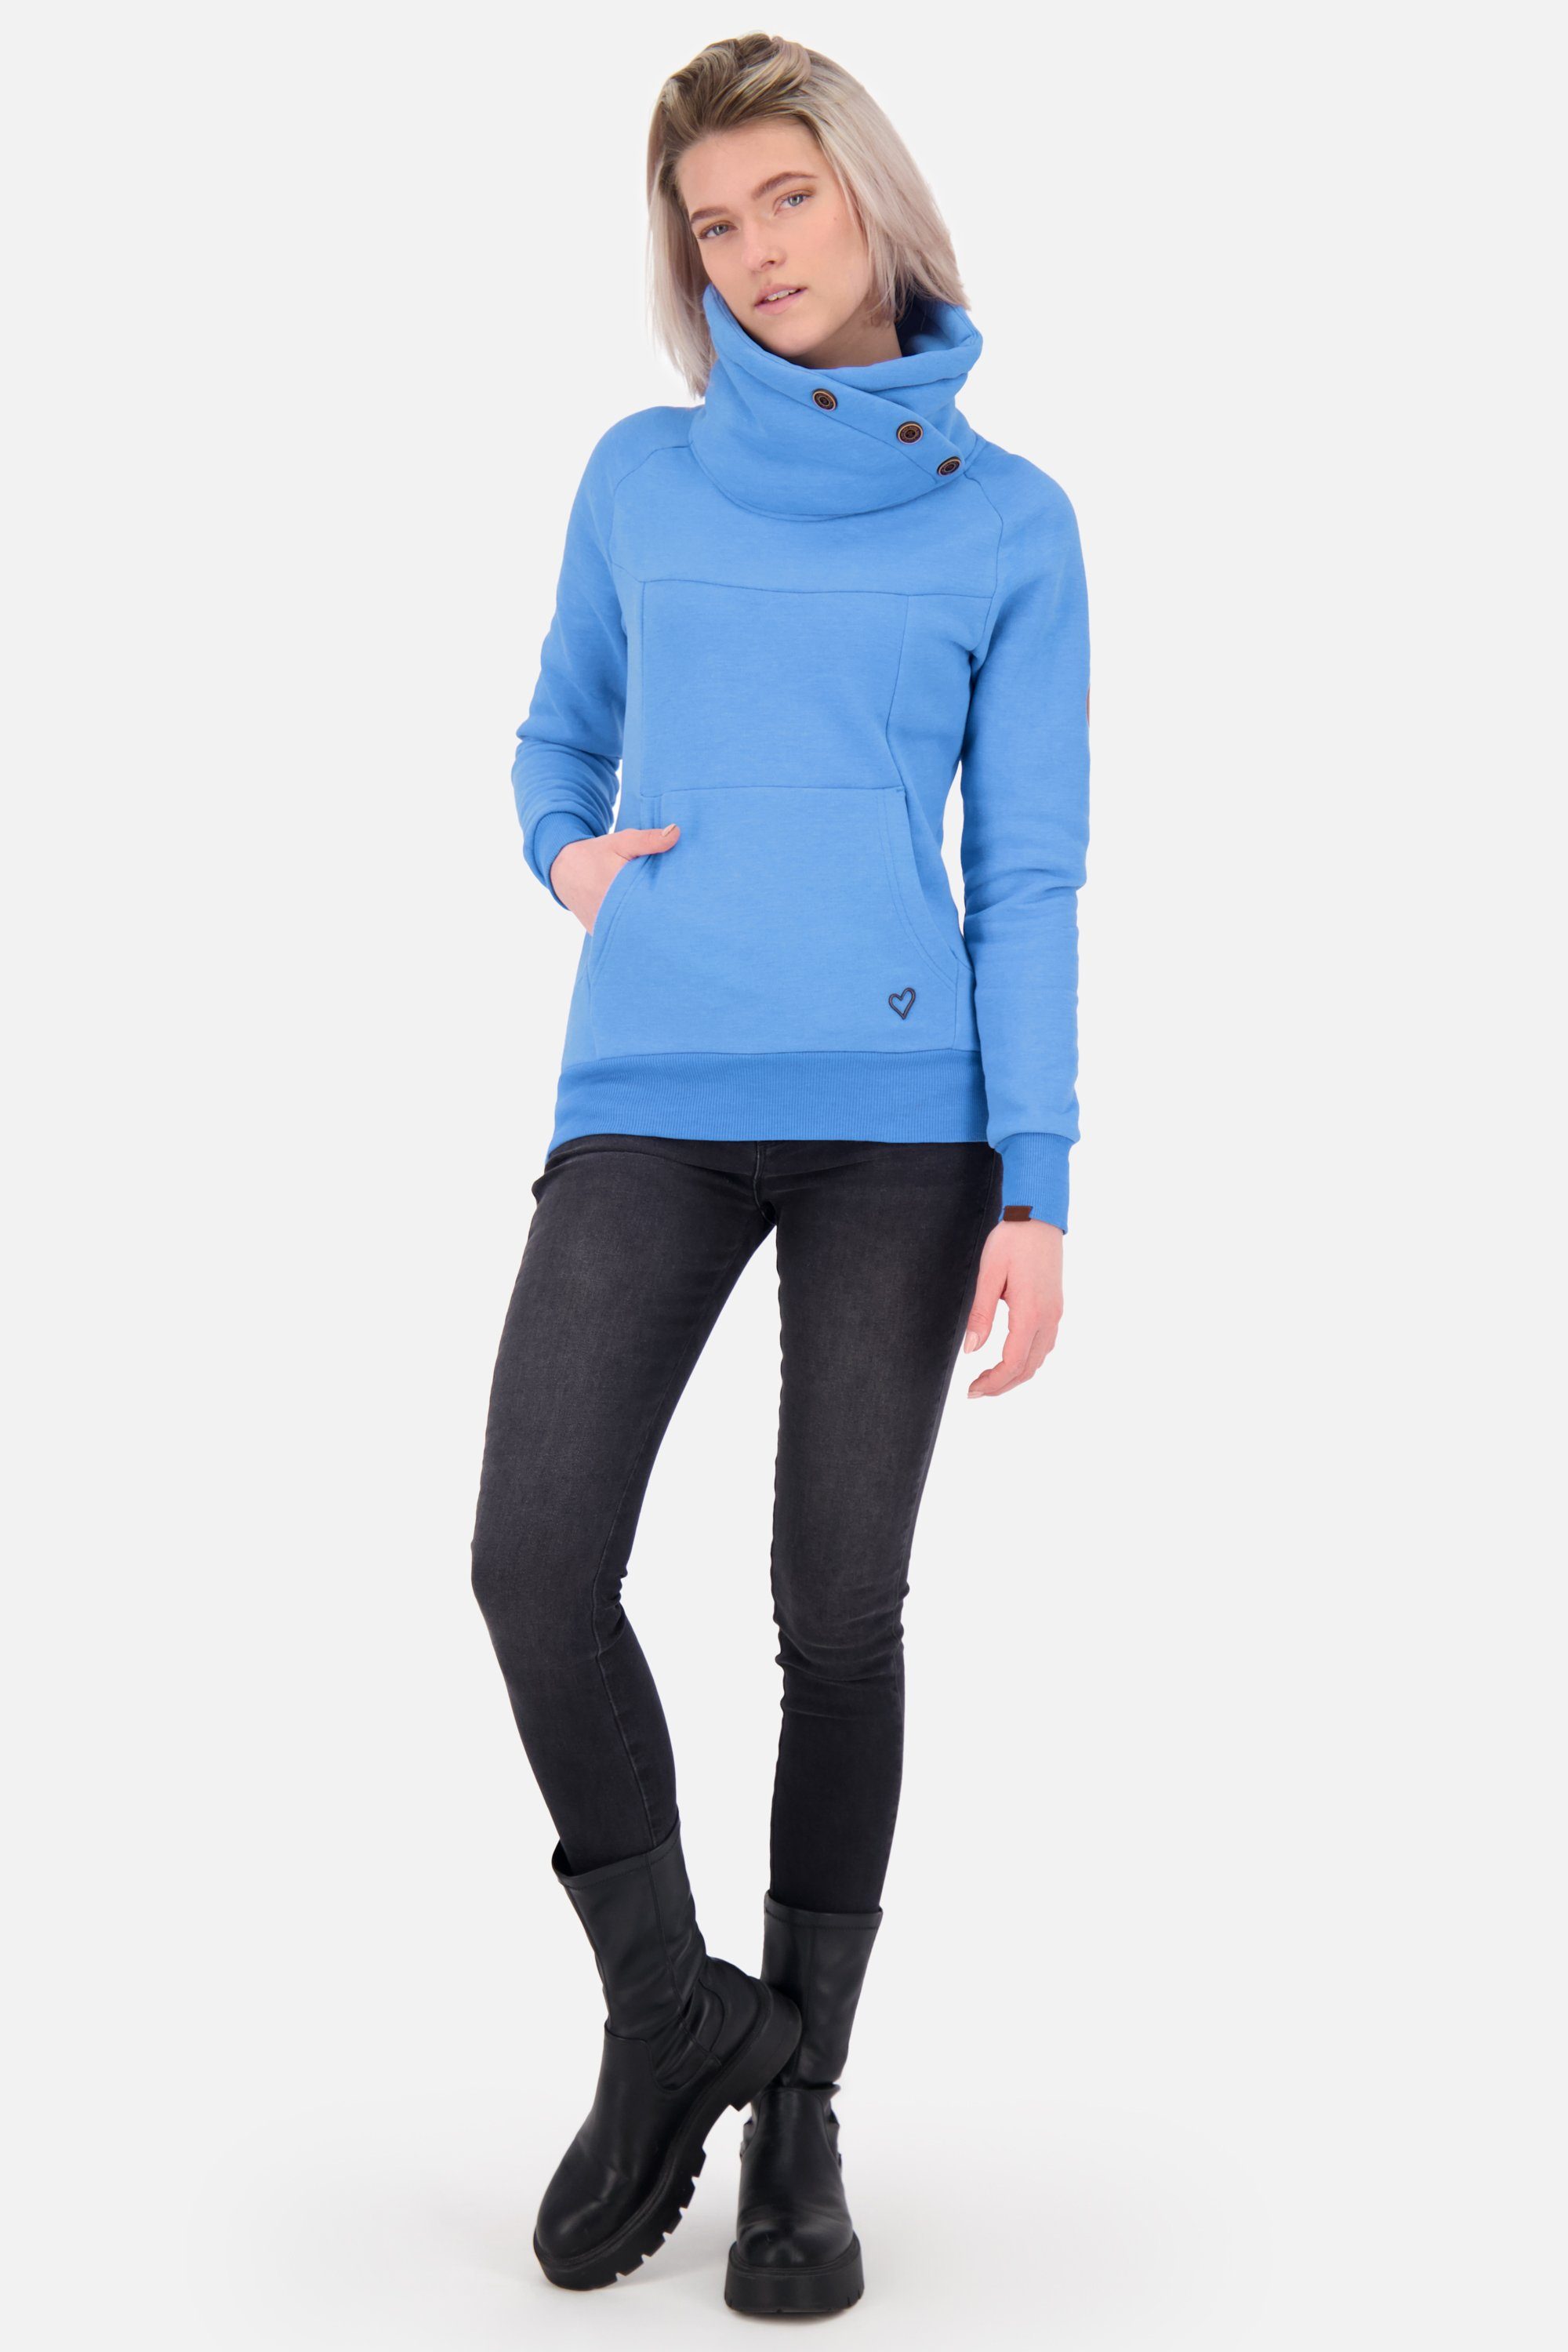 Alife Damen Sweatshirt A Sweatshirt melange VioletAK & Kickin azure Rundhalspullover, Pullover